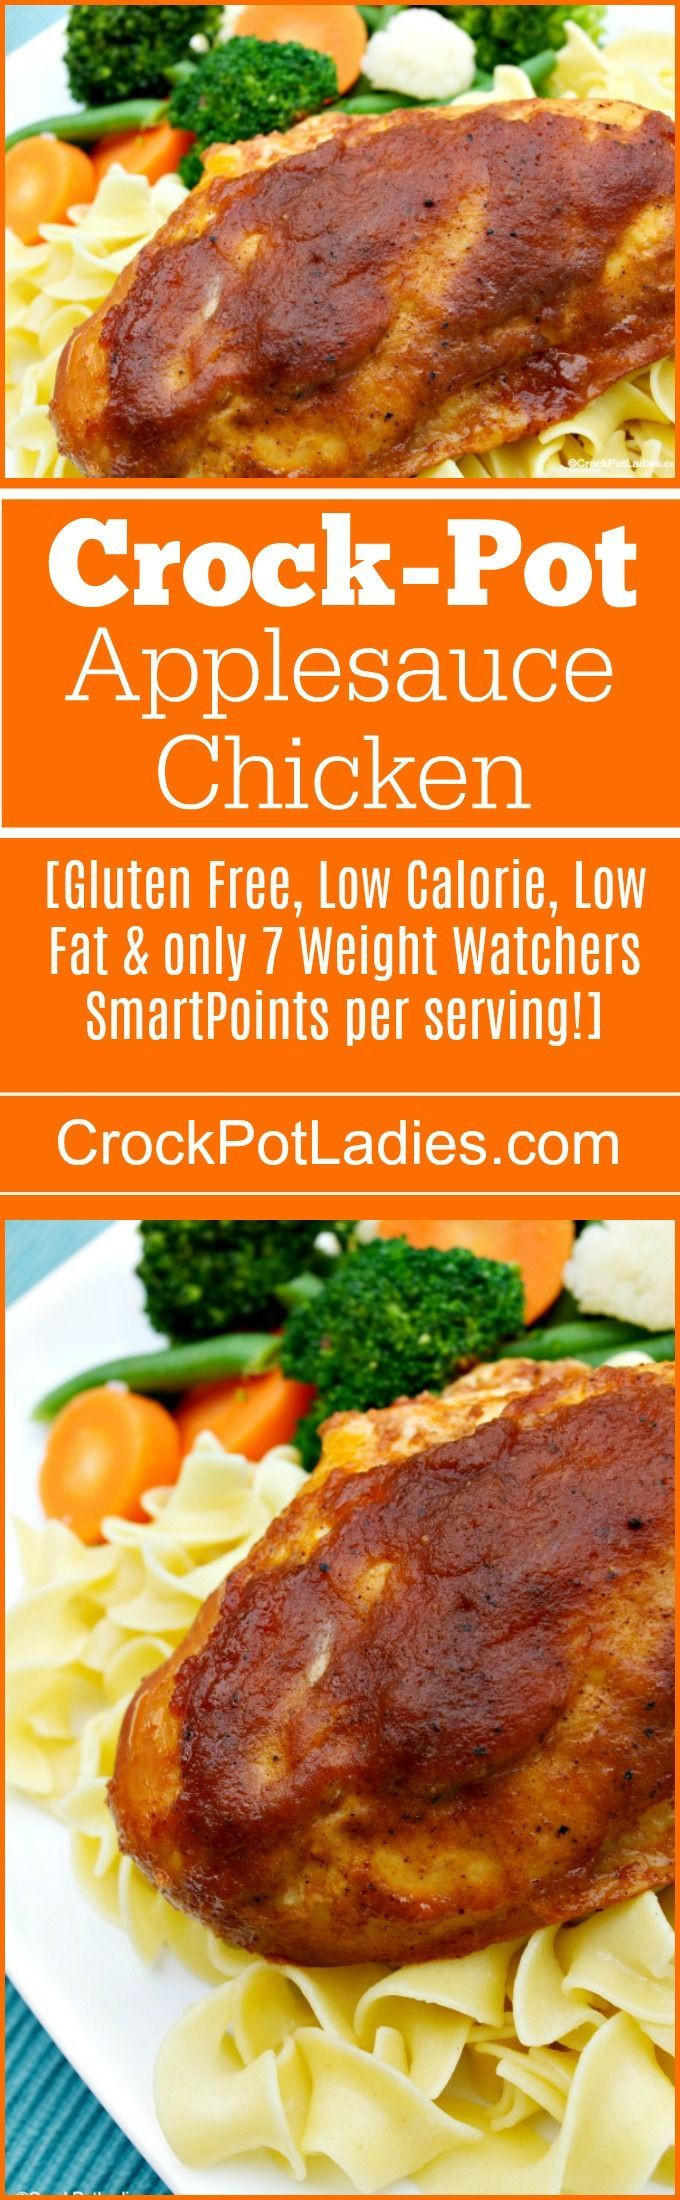 Low Fat Slow Cooker Recipes Weight Watchers
 25 best Cheap crock pot recipes ideas on Pinterest